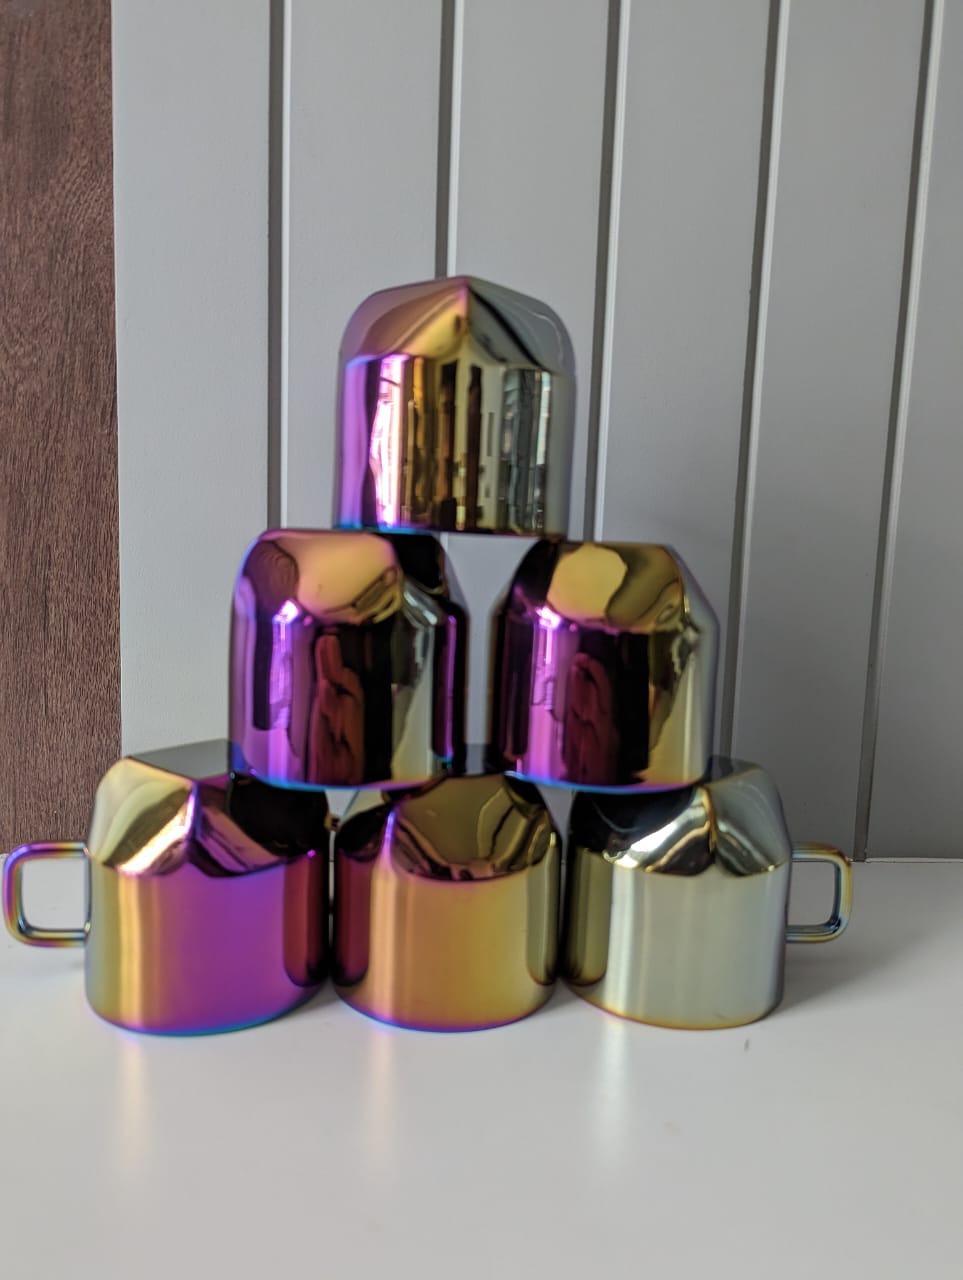 Rainbow Coated Steel Cup Set